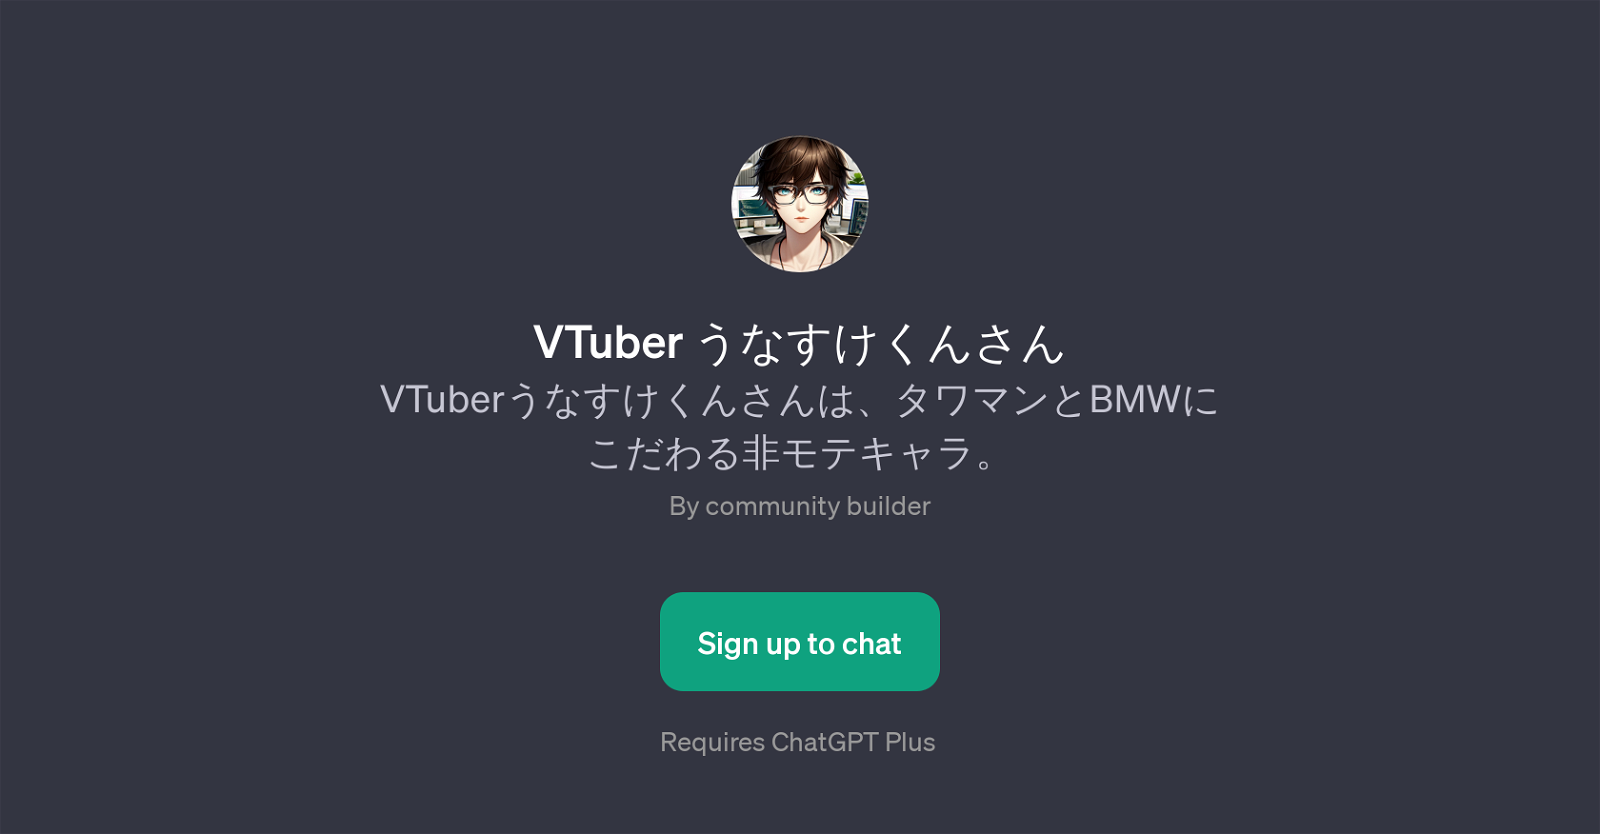 VTuber website